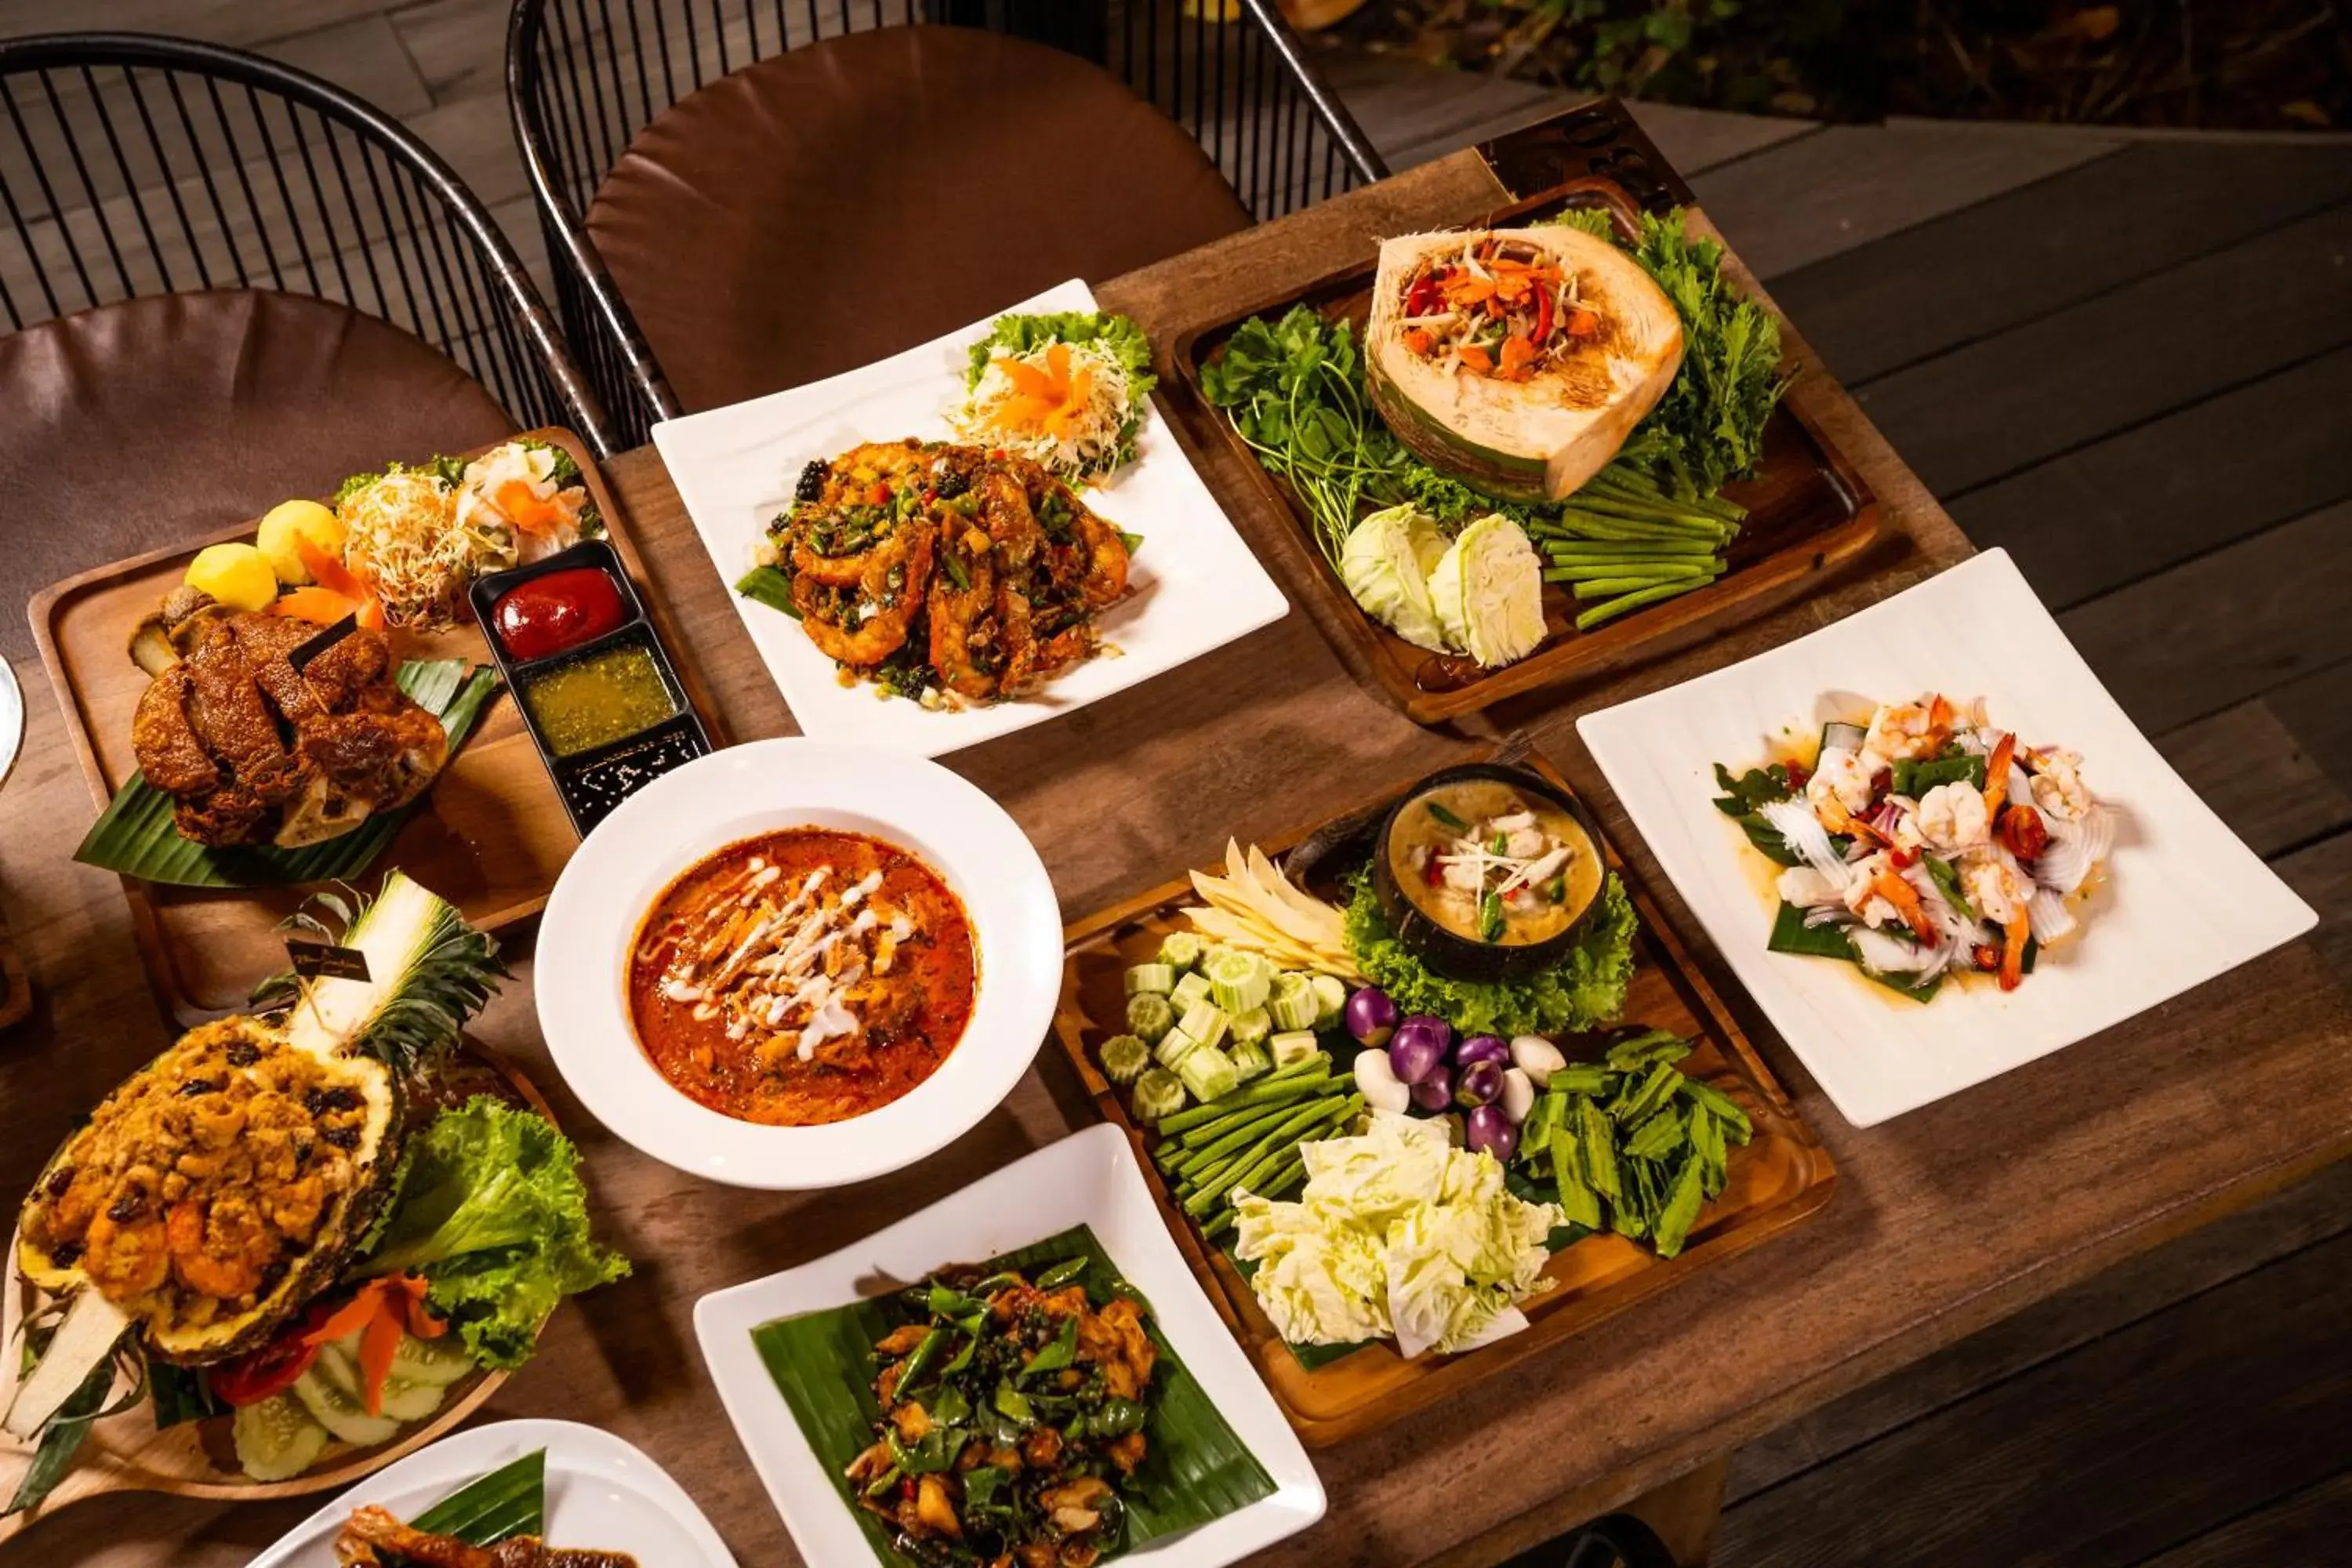 Food, Lunch and Dinner in Khum Damnoen Resort